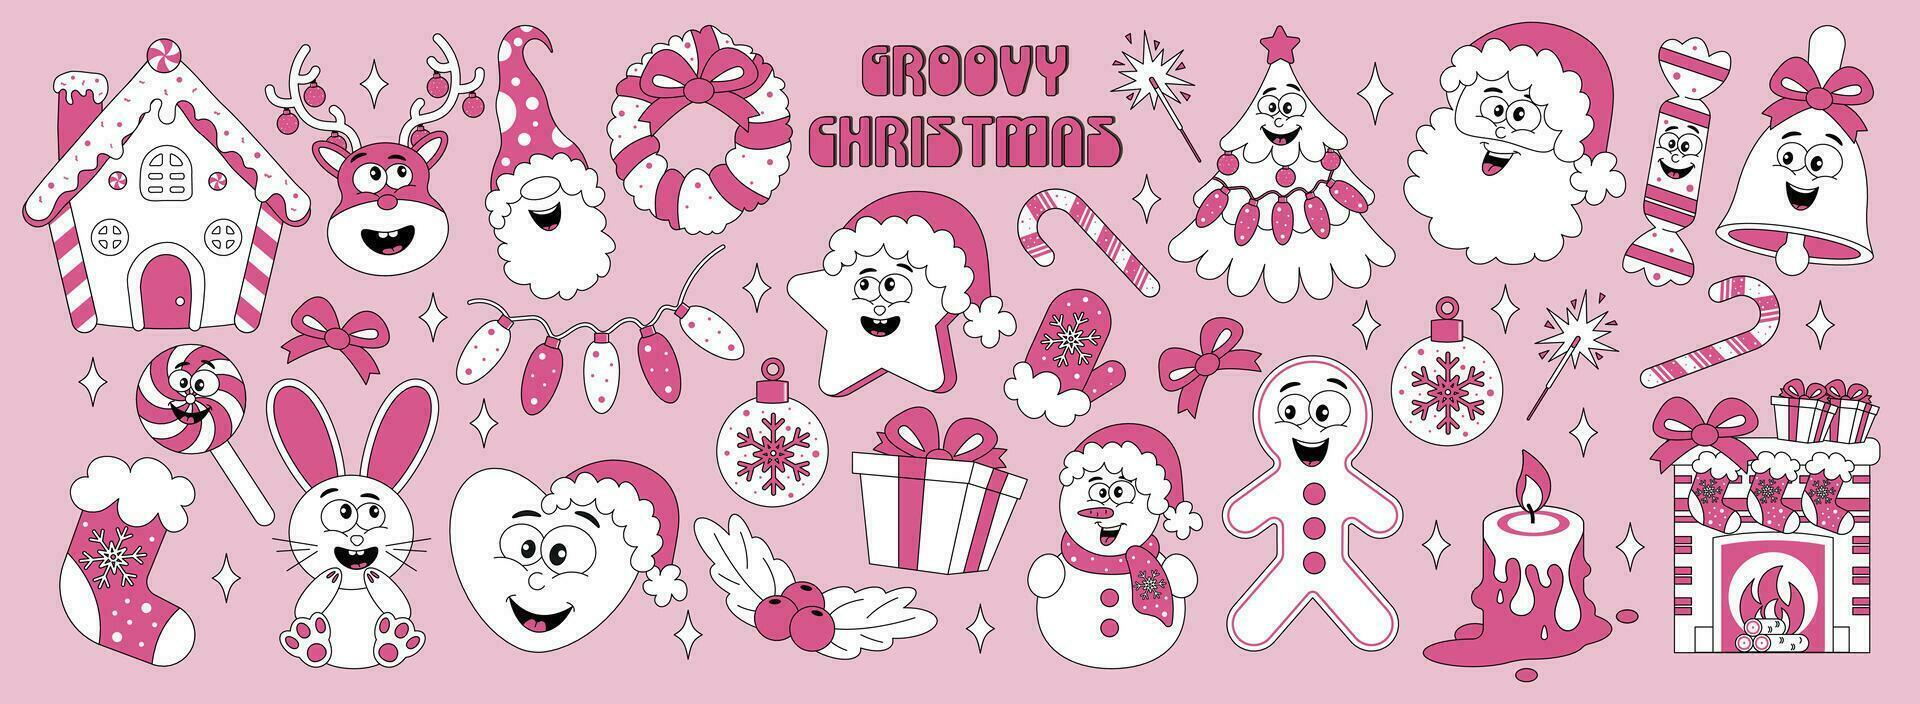 uppsättning av klistermärken med retro tecknad serie tecken ny år, jul. vektor illustration i rosa färger i 80-tal, 90s stil.